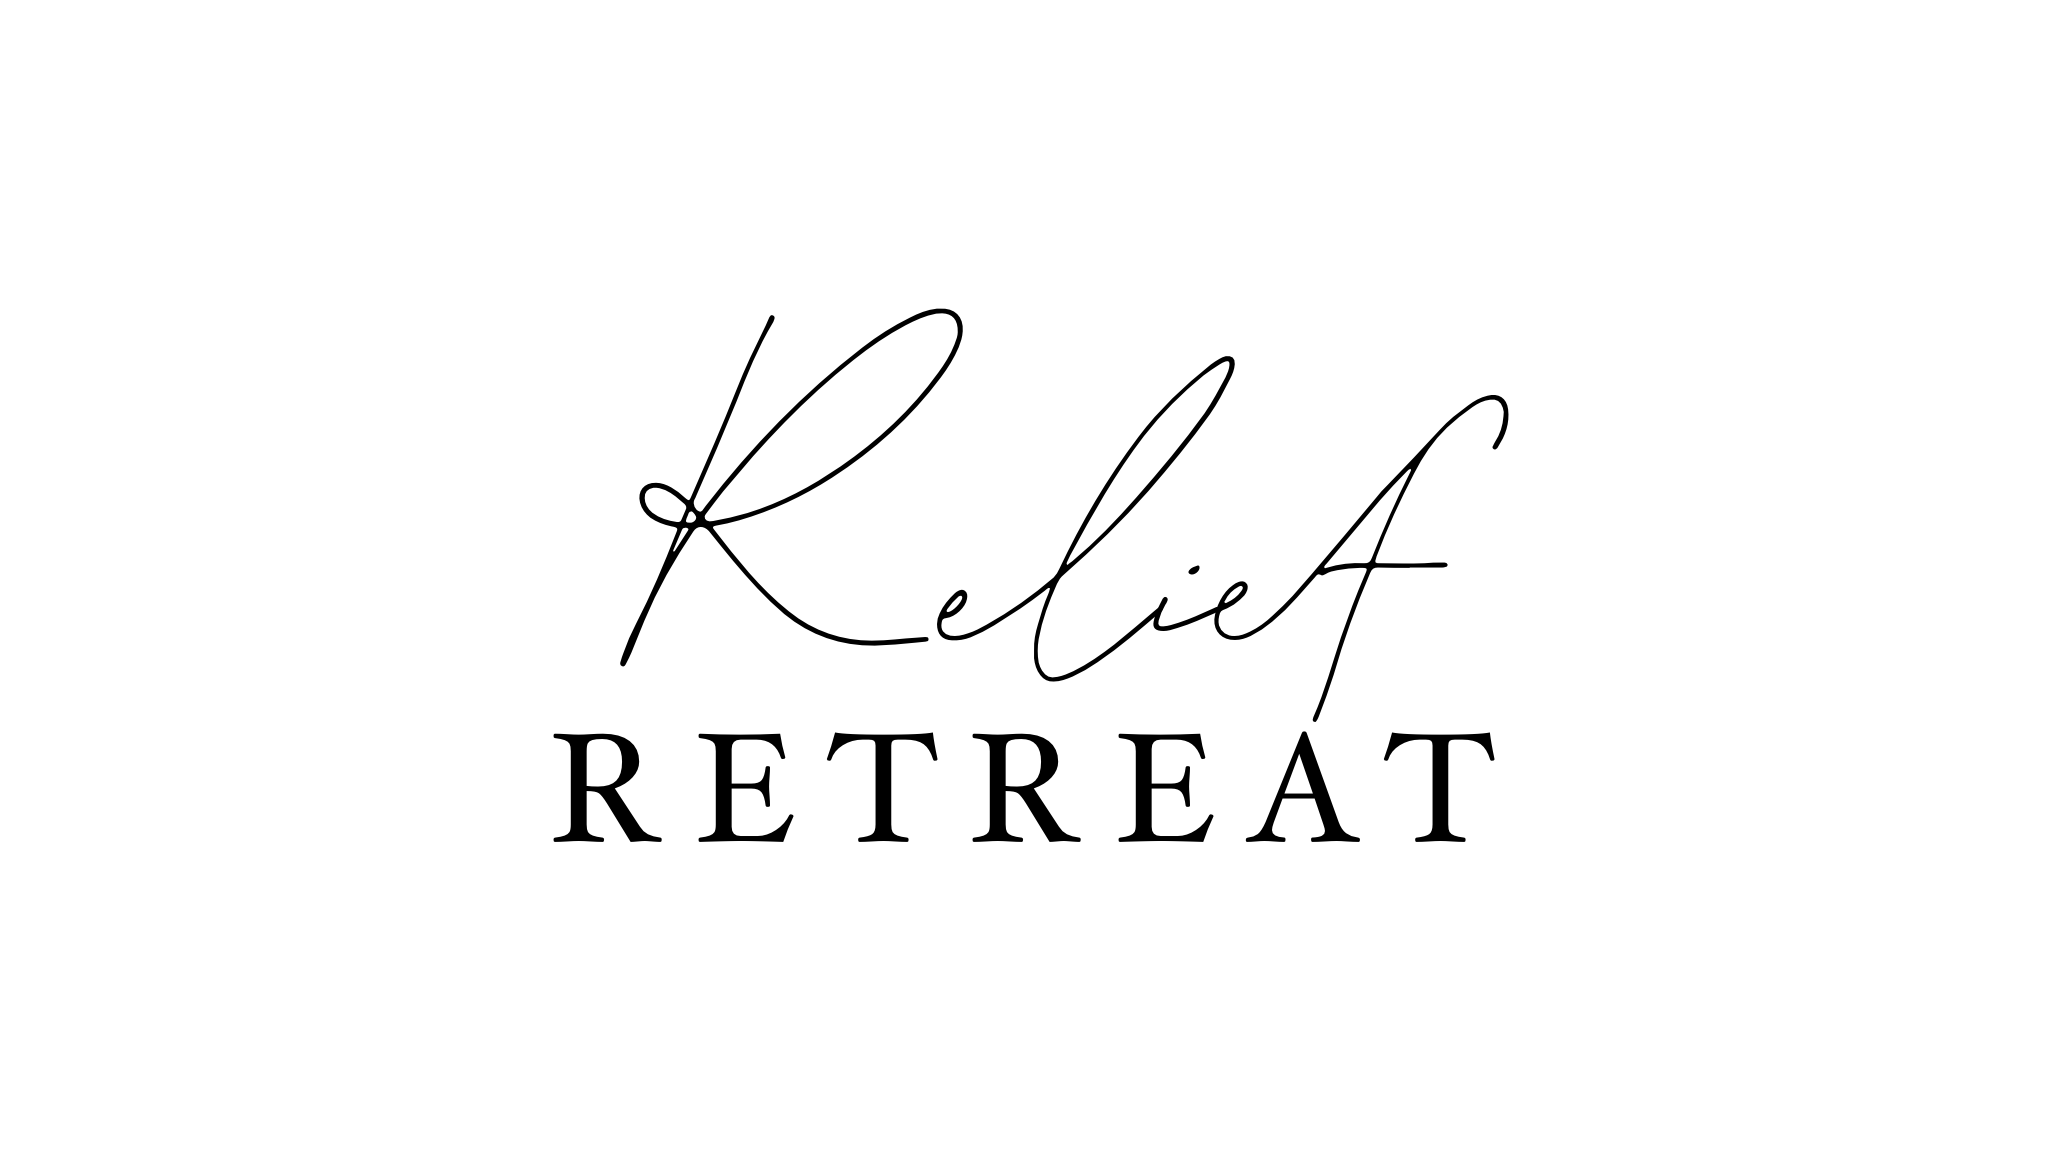 Relief Retreat